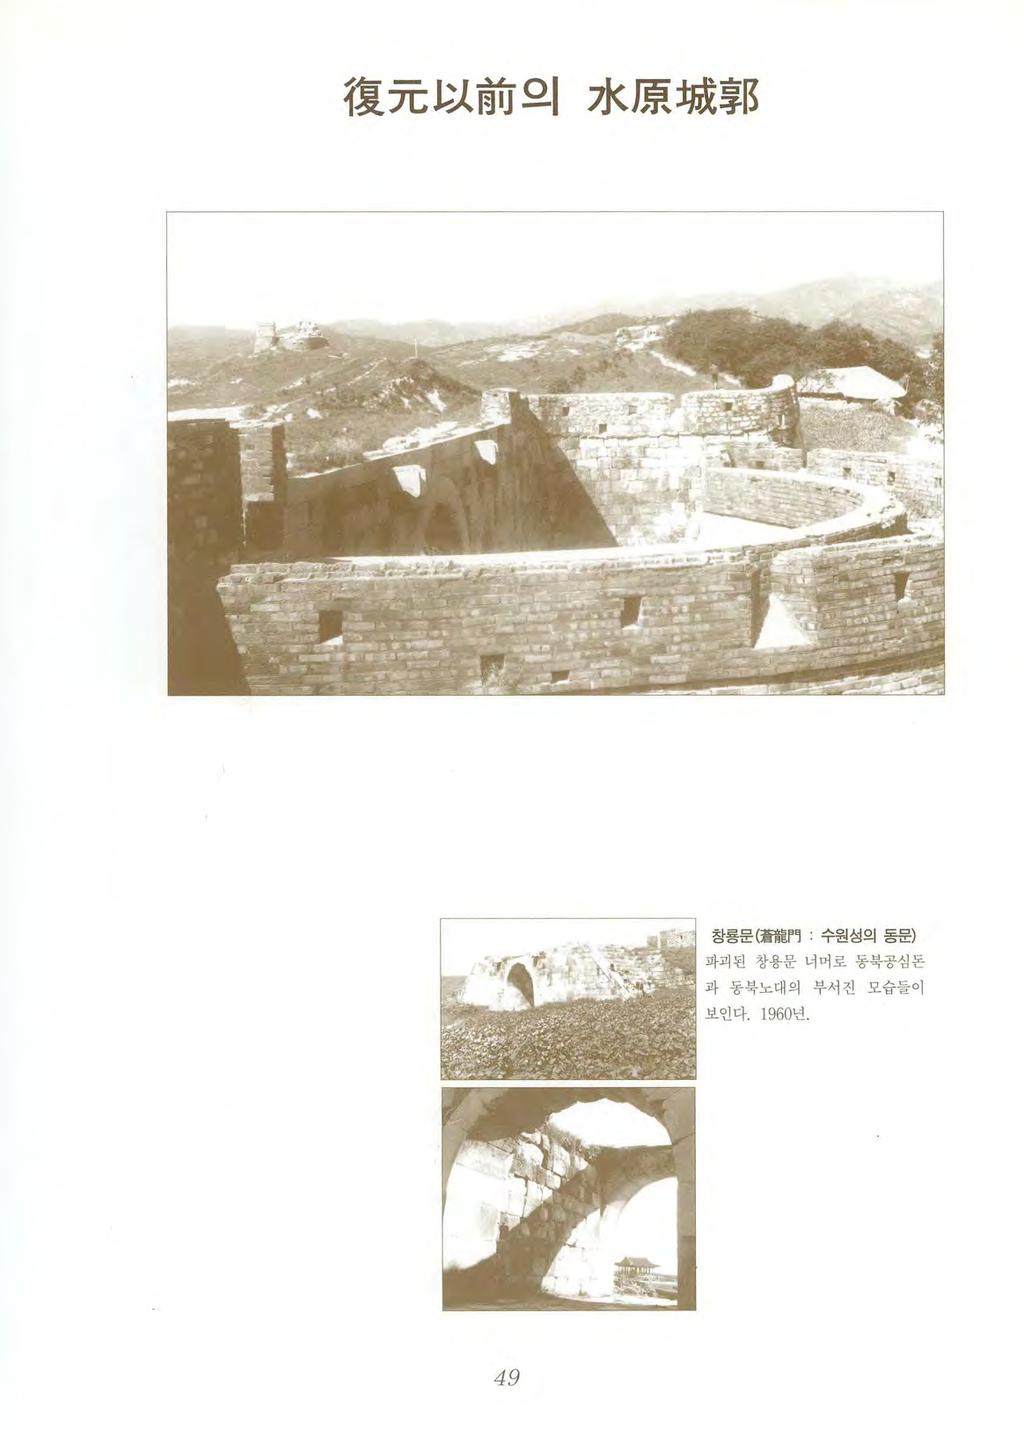 復元以前의水 l 惠城훌 R 창룡문 ( 蒼龍門수원성의동문 )